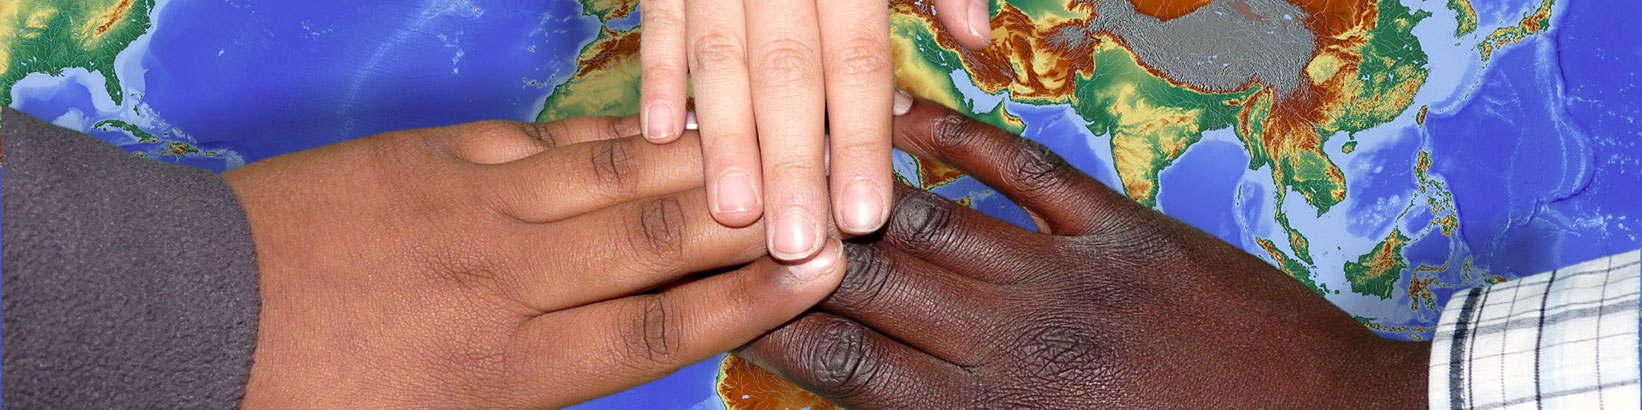 Kinderhände verschiedene Ethnien